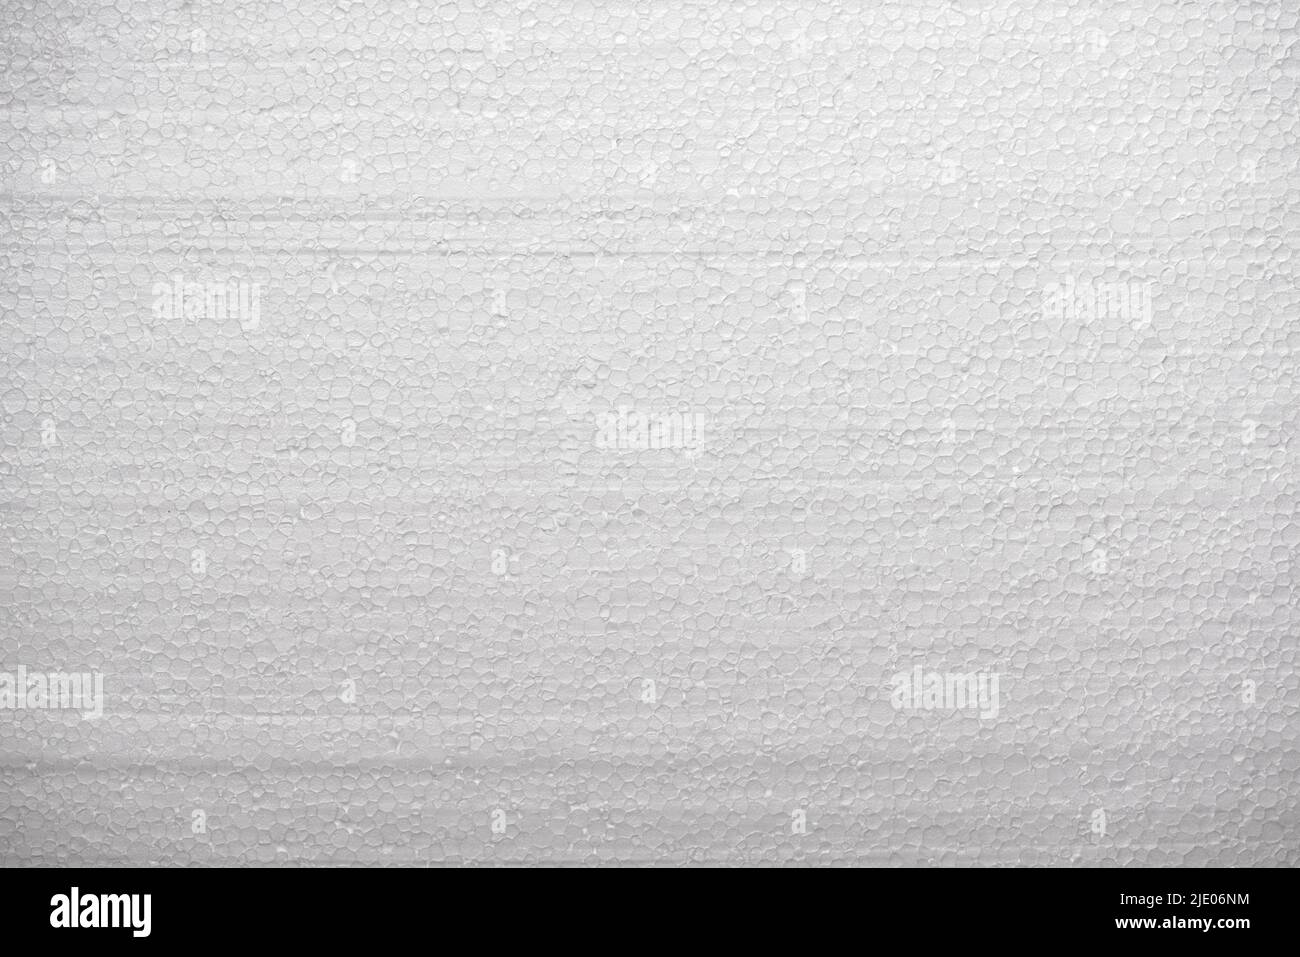 Polystyrol-Schaum-Textur - weiße Isolierung und Verpackung synthetisches Material Stockfoto